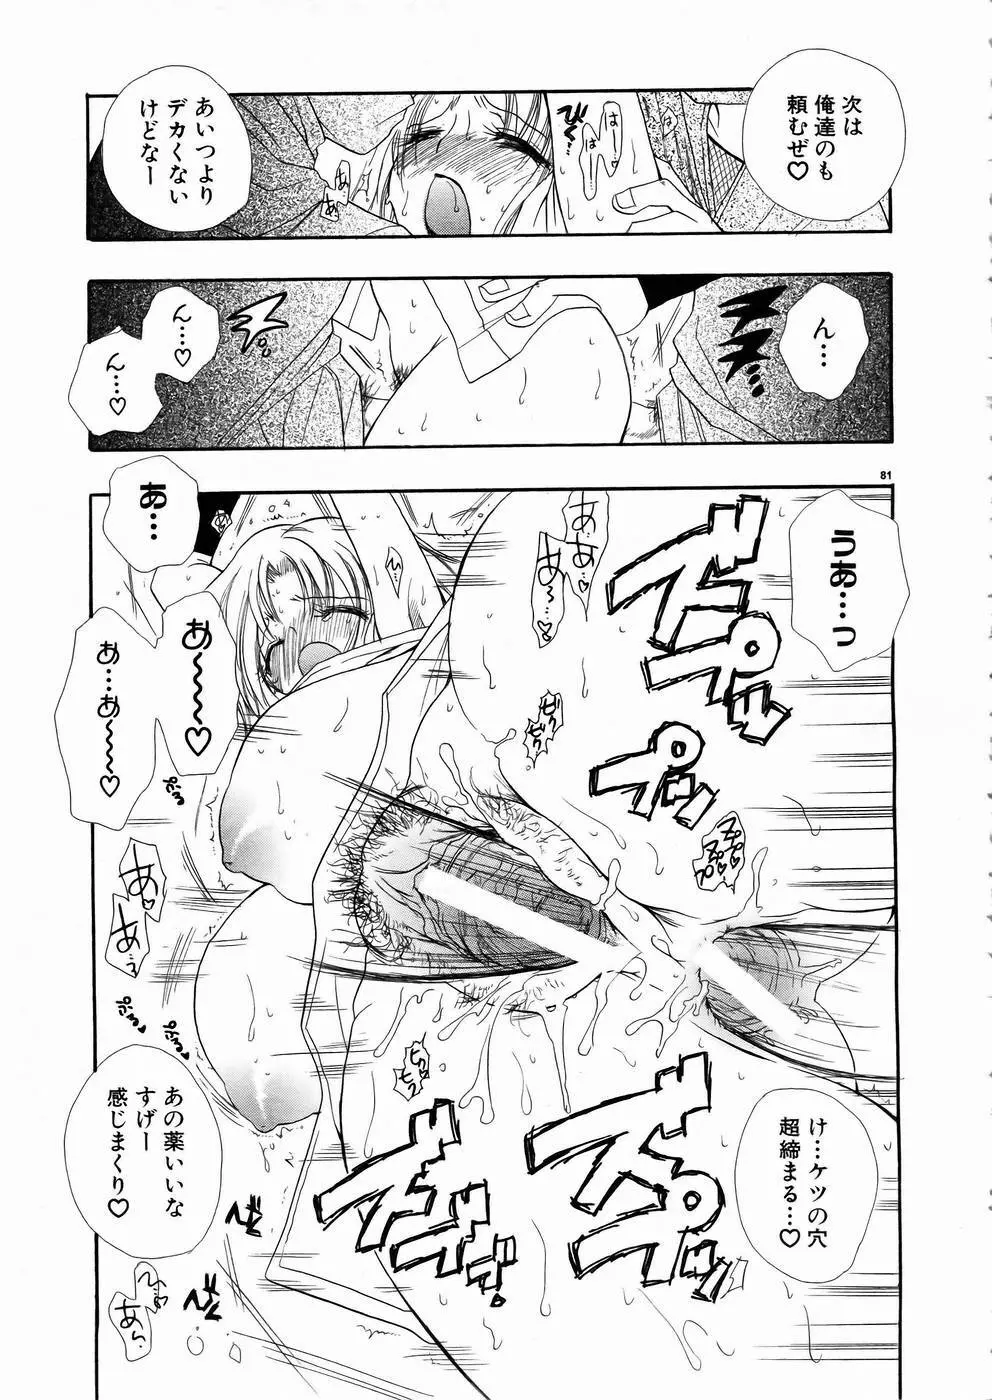 少女剣客凌辱コミック Vol.01 くノ一斬! 78ページ